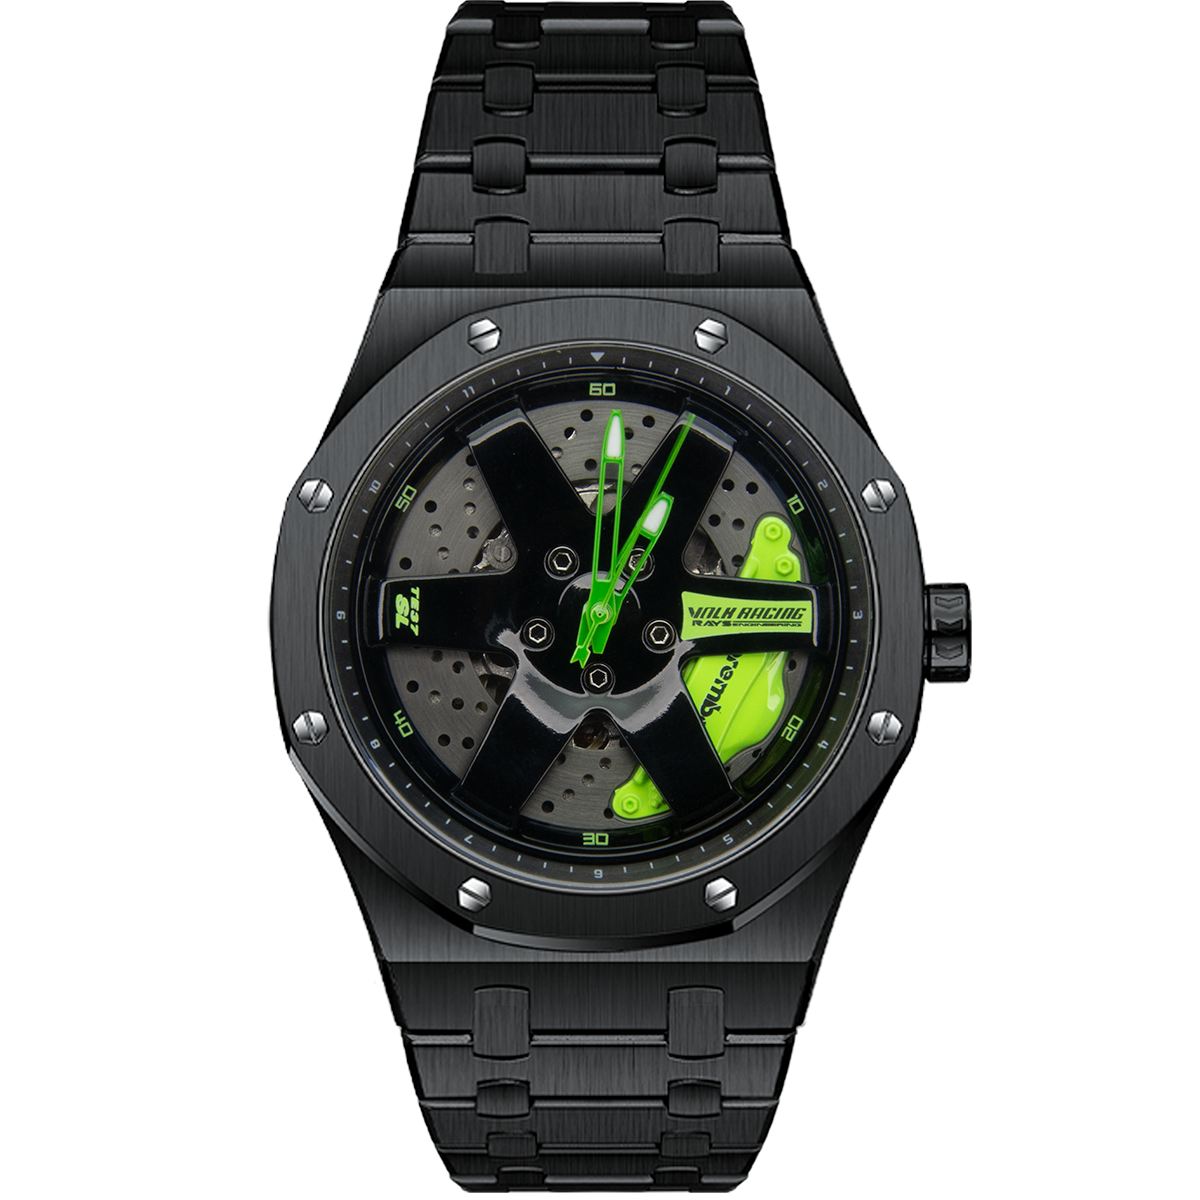 Watch configurator - SARO-Gem Sapphire watches